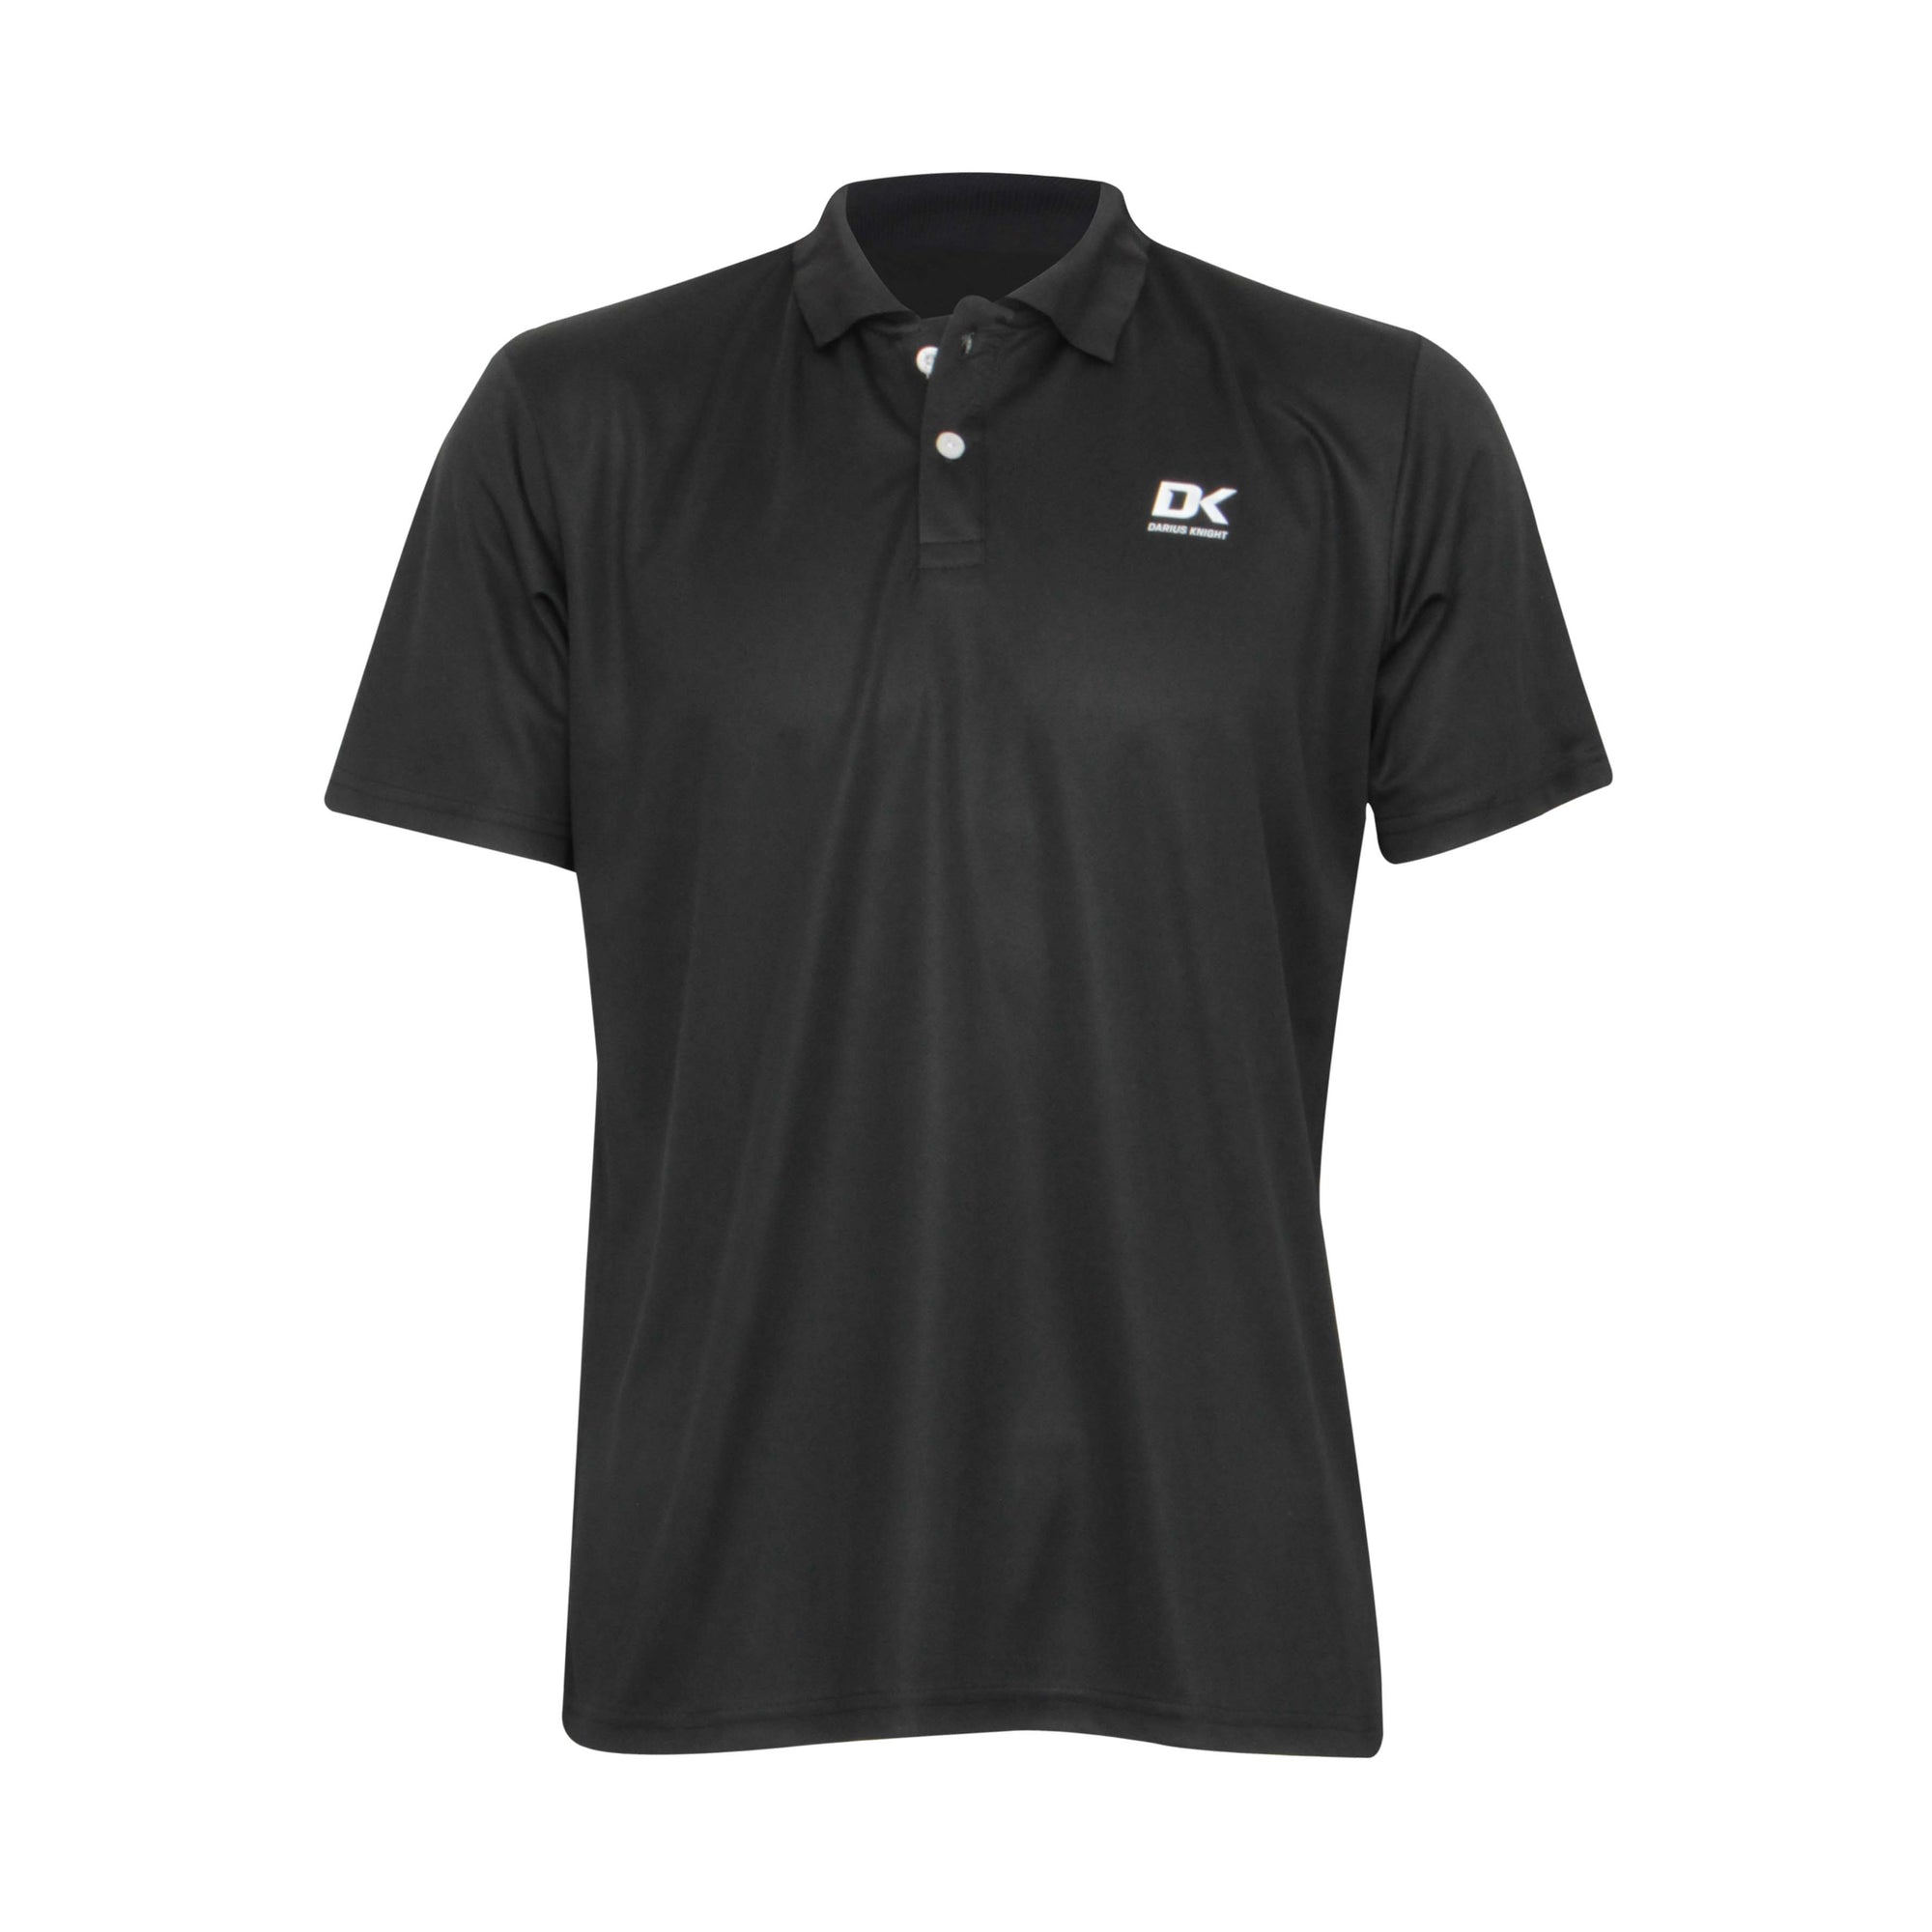 DK Polo Shirt (Black) - DK Sports